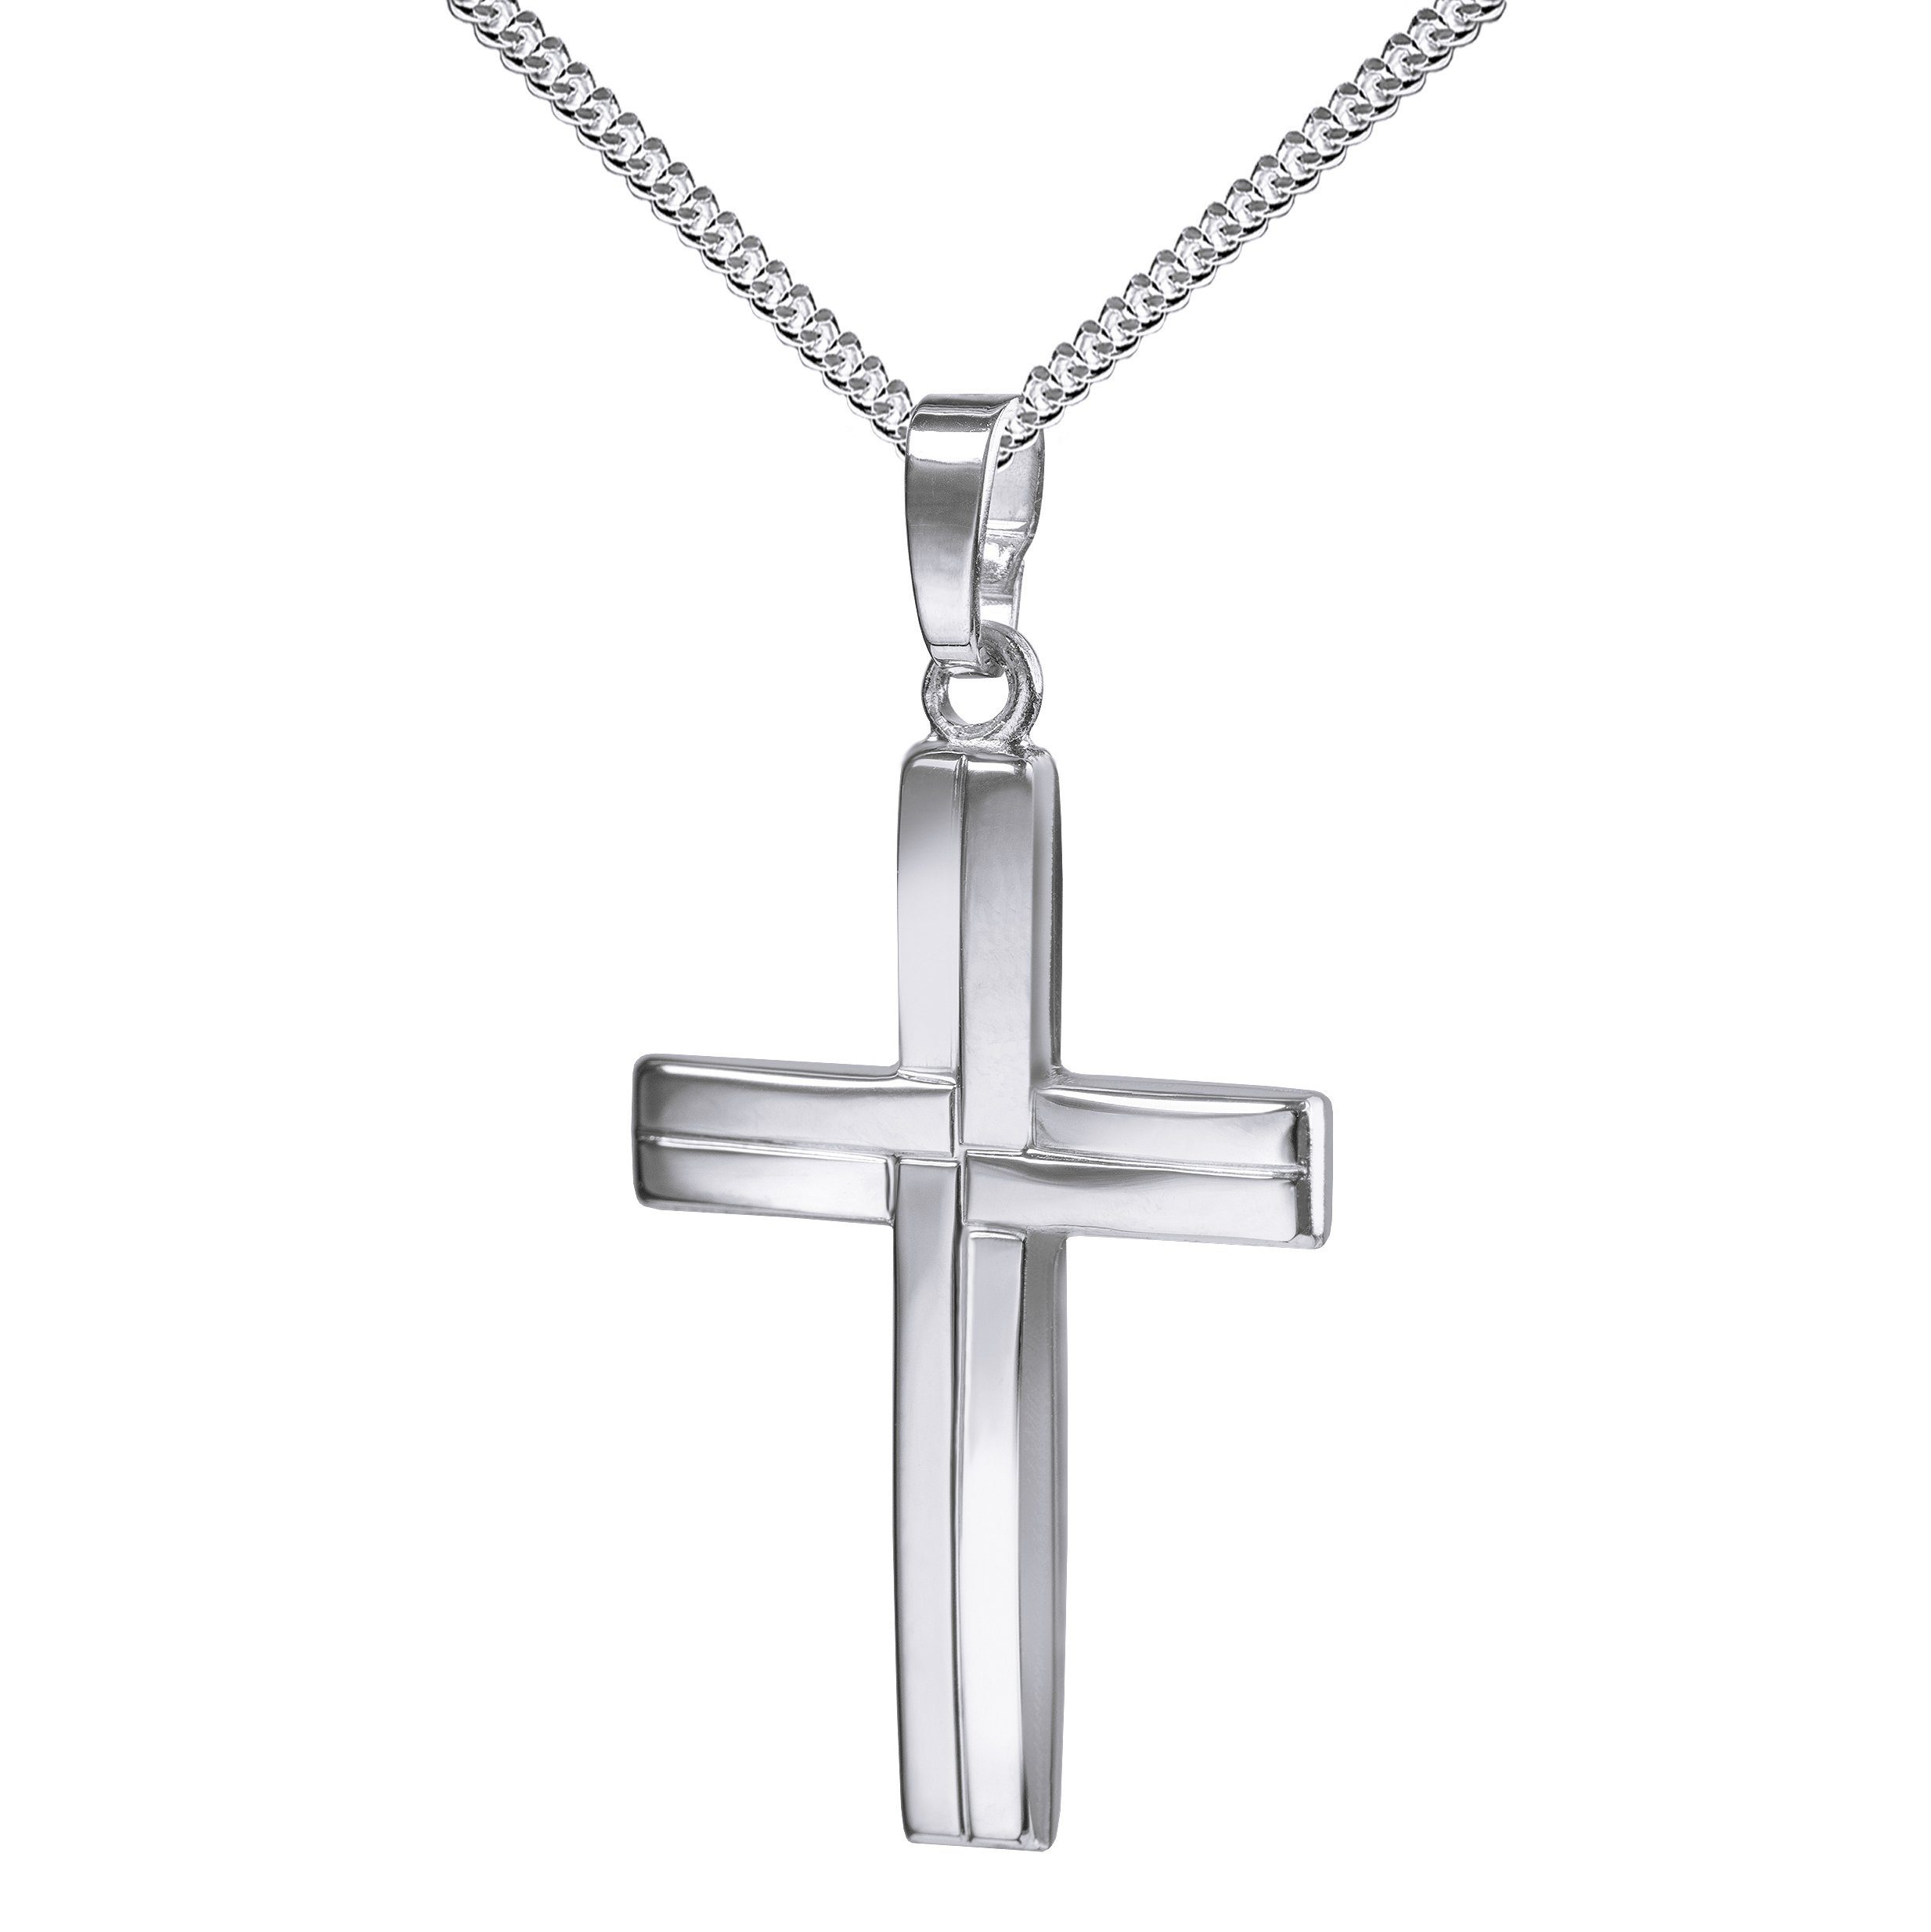 JEVELION Kreuzkette Kreuzanhänger 925 Silber - Made in Germany (Silberkreuz, für Damen und Herren), Mit Silberkette 925 - Länge wählbar 36 - 70 cm oder ohne Kette.